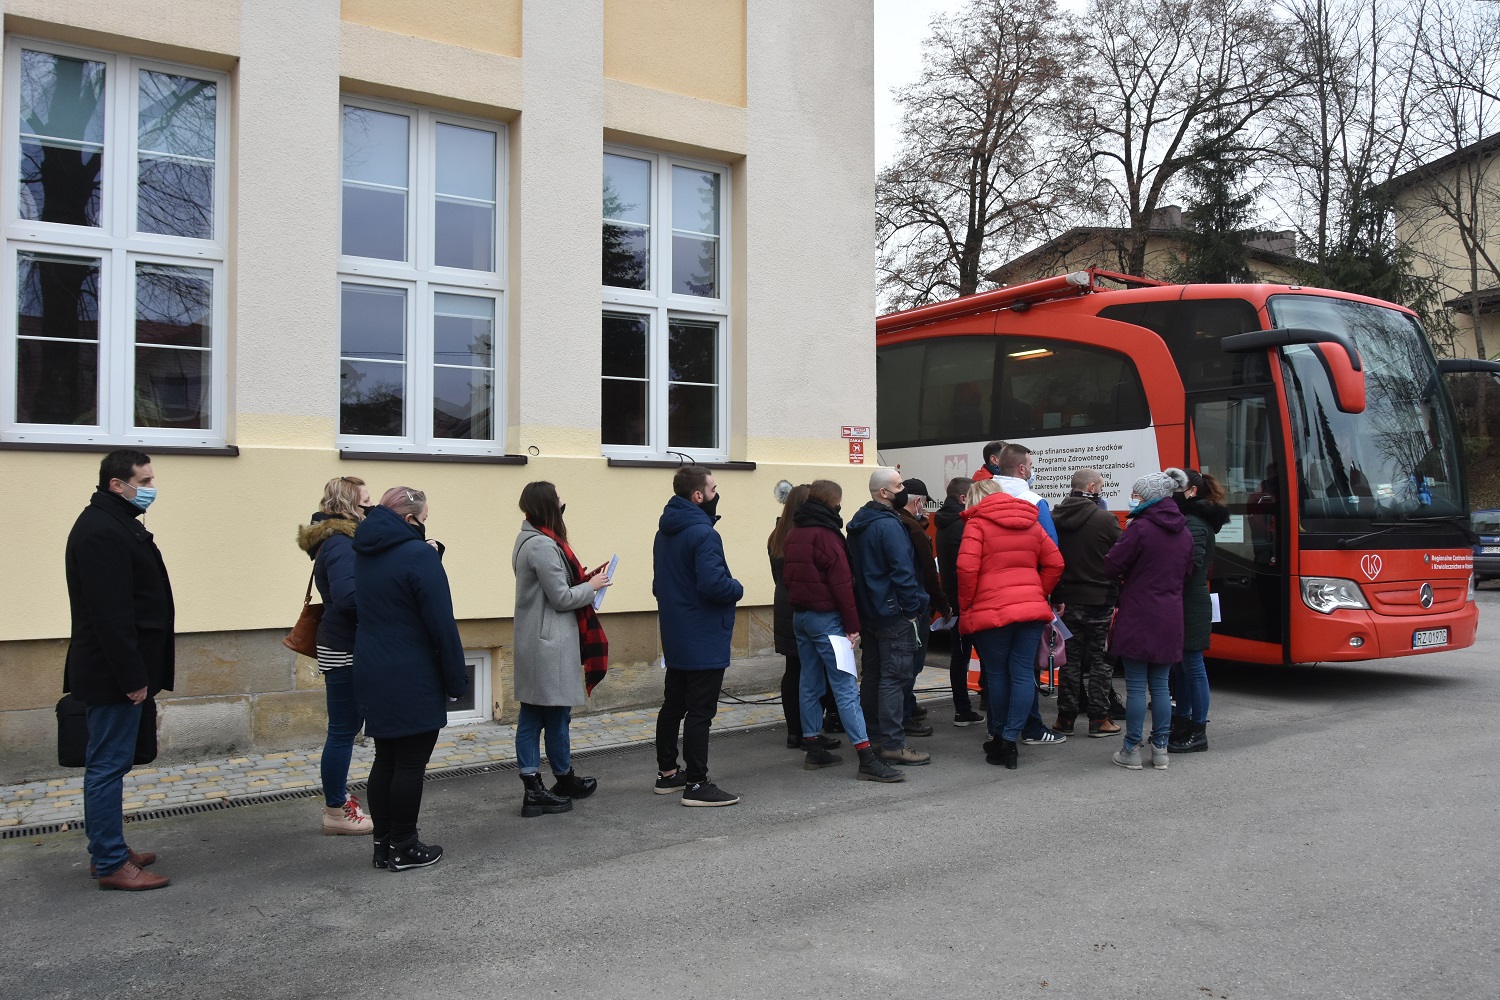 Kolejka kilkudziesięciu ludzi (mężczyzn i kobiet) oczekujących na pobranie krwi w specjalnym do tego przygotowanym autobusie koloru czerwonego.